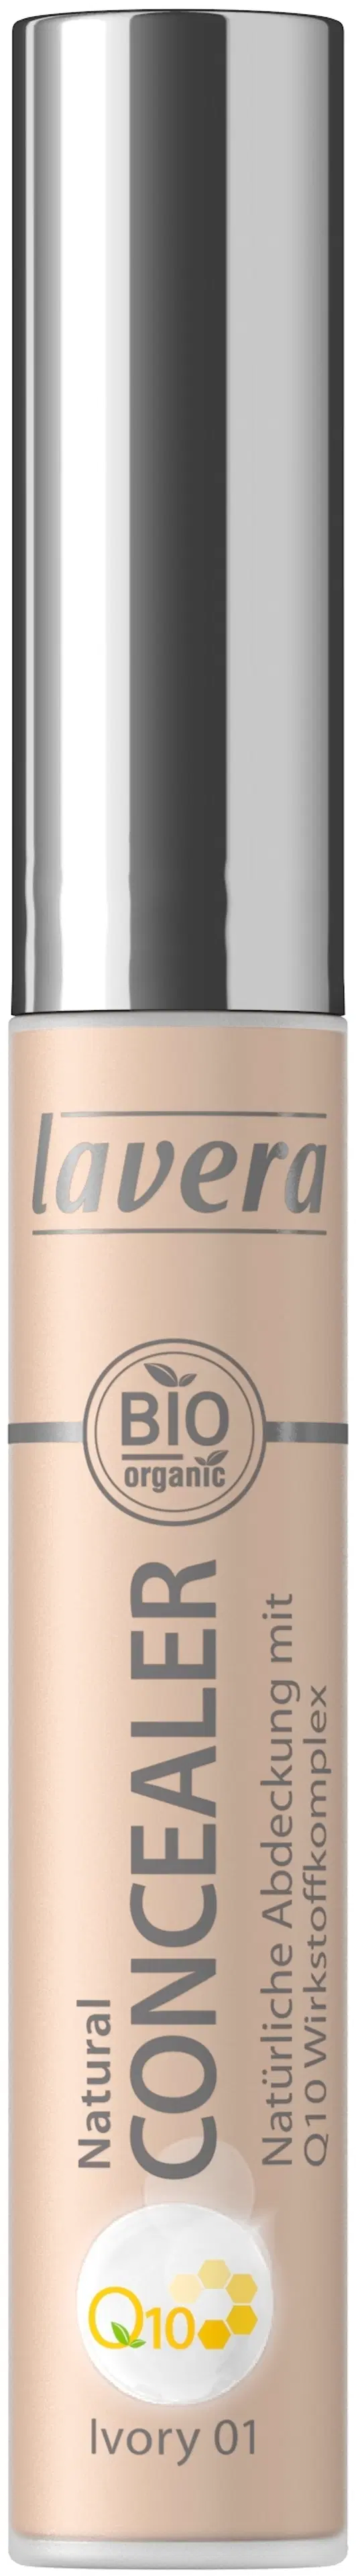 lavera Trend Sensitiv Natural Concealer Q10 5,5ml Ivory 01